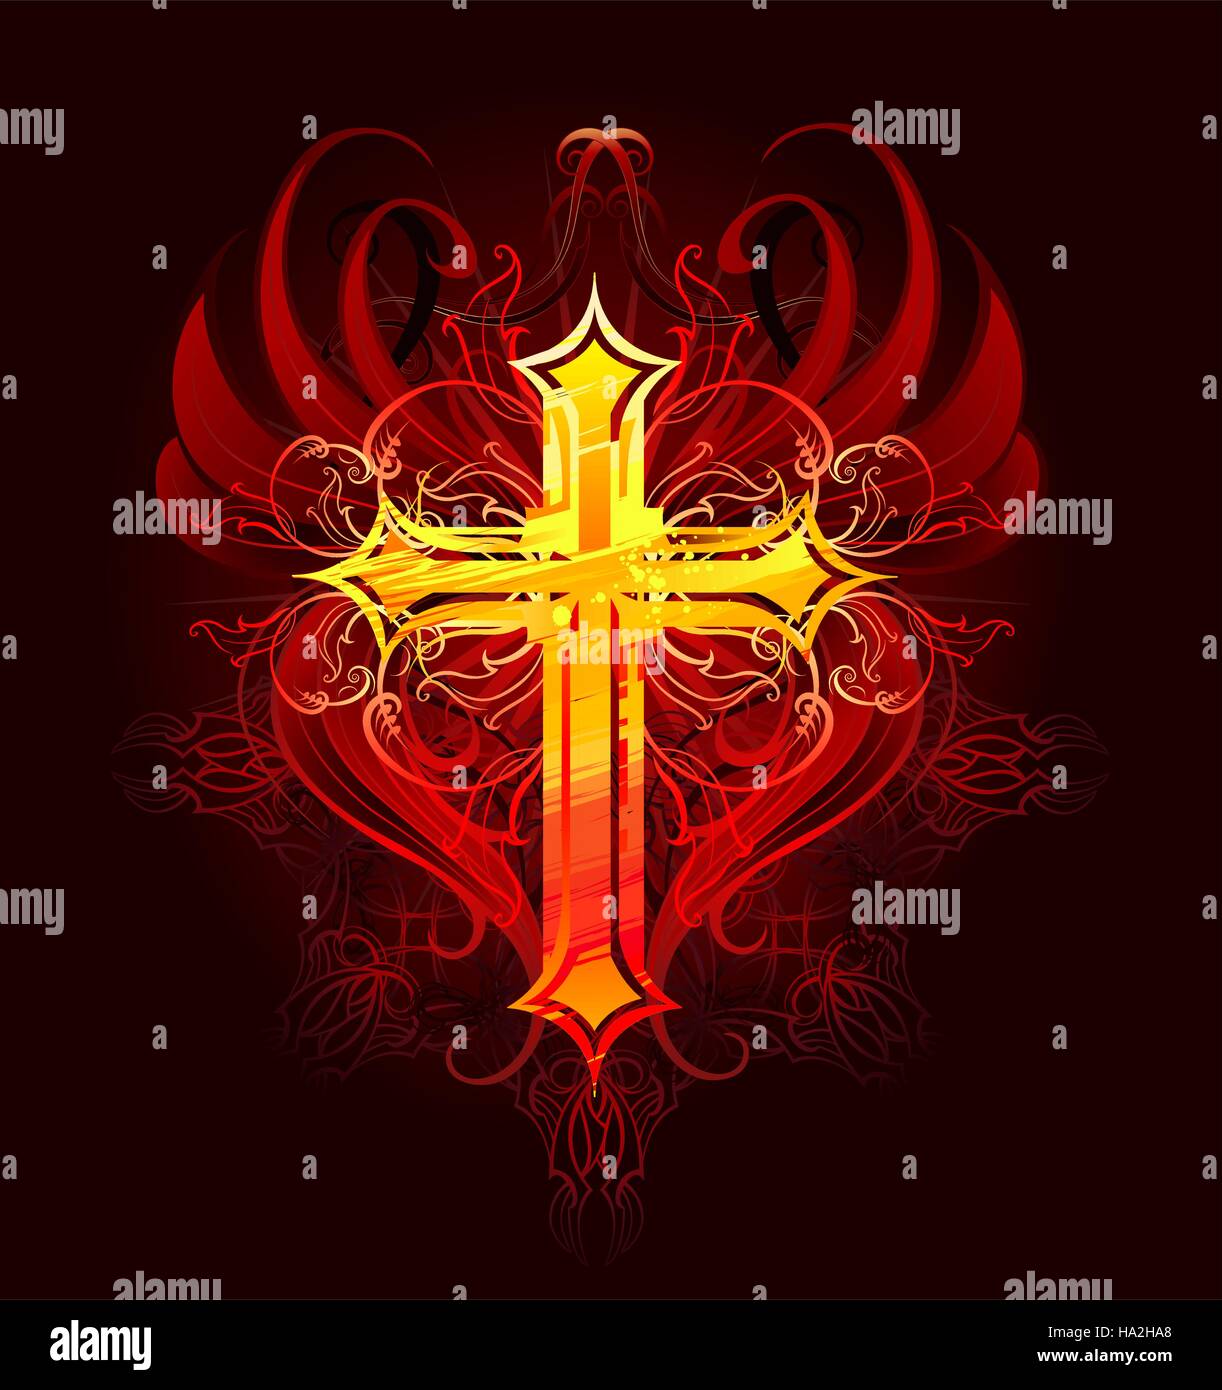 leuchtende Kreuz, gezeichnet durch große Hübe orange und rote Farbe mit roten stilisierten Flügeln auf einem dunklen Hintergrund, dekoriert mit dunklen Muster Stock Vektor